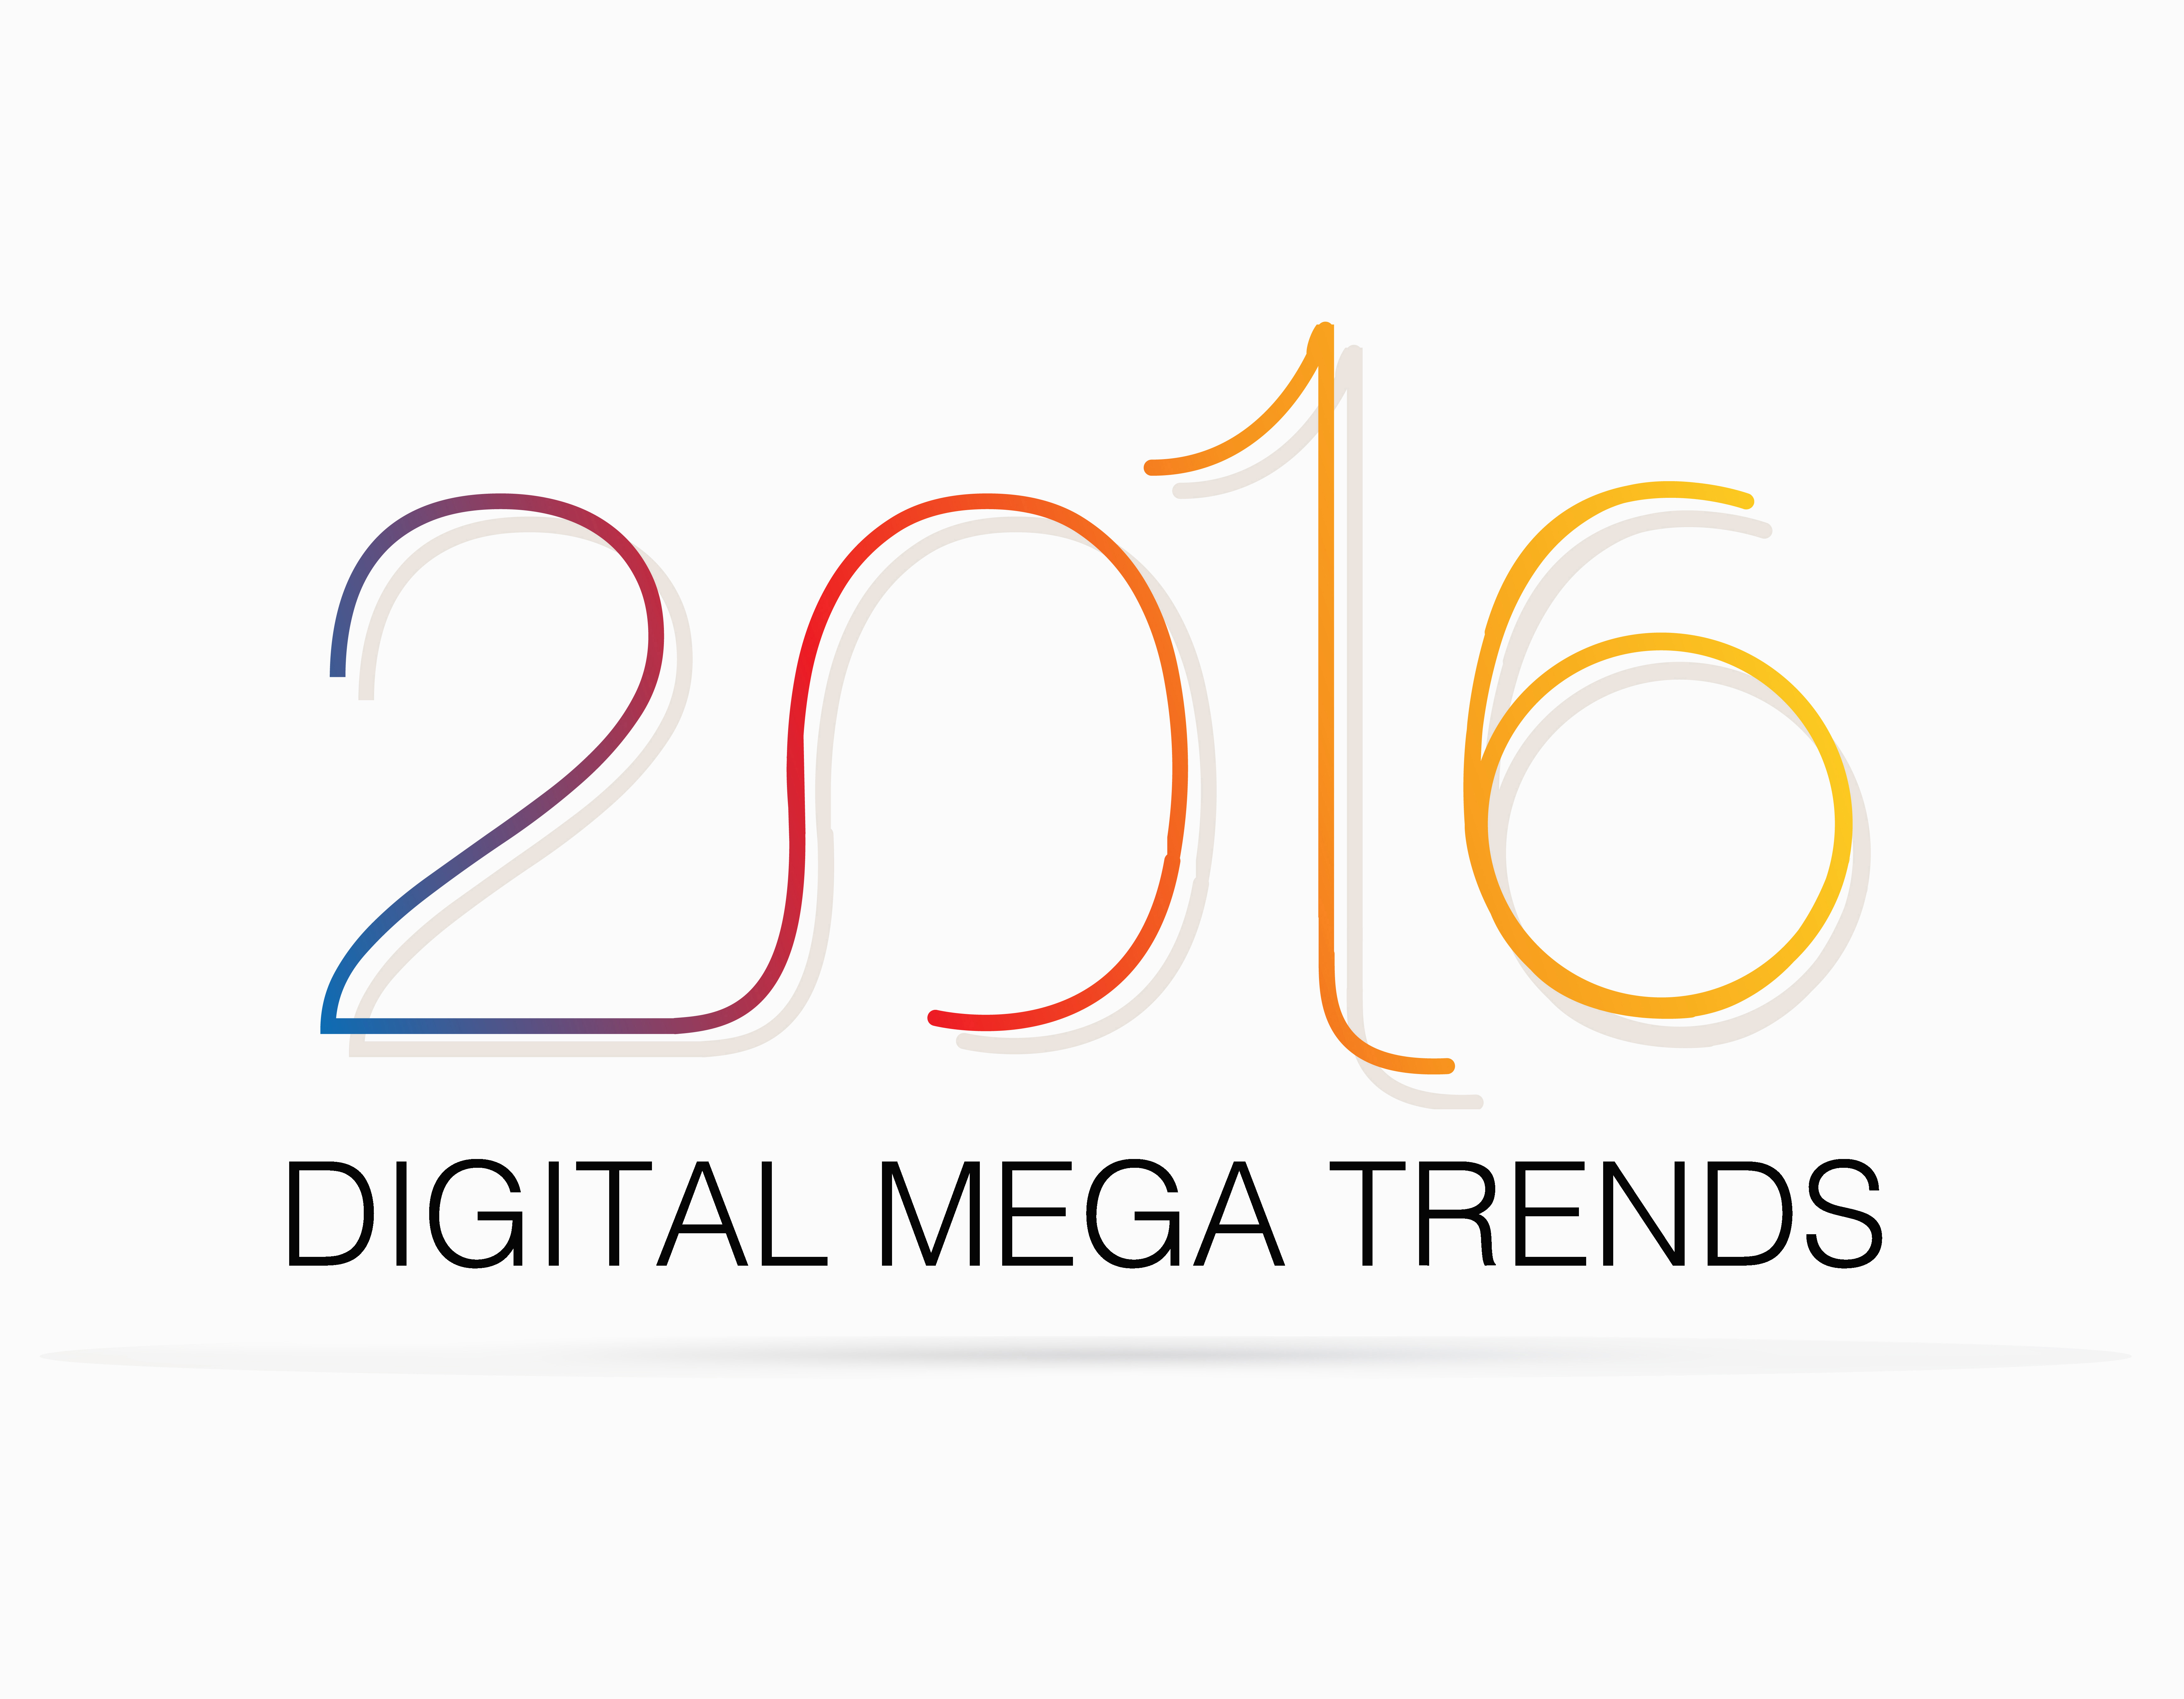 Mega-Trends 2016 – 12 Experten und ihre Prognosen fürs neue Jahr